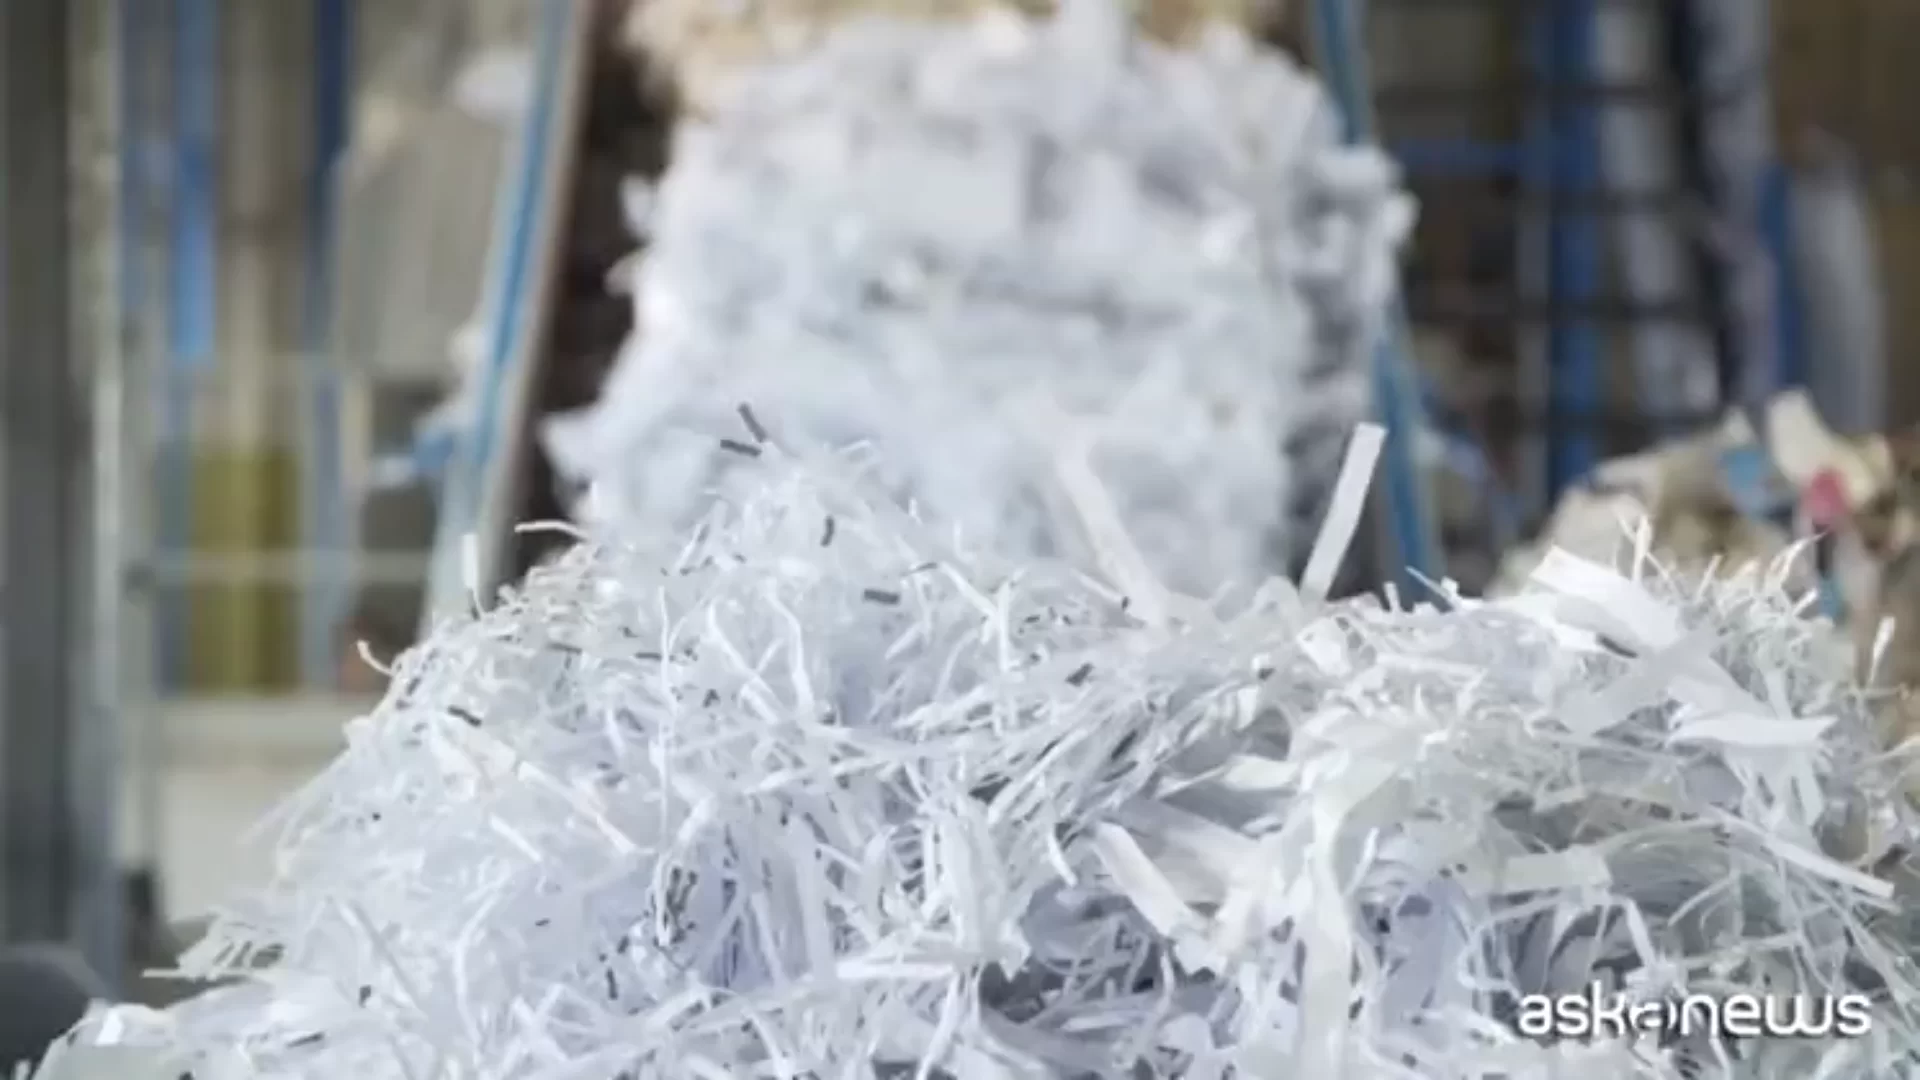 Italia ocupa el segundo lugar en Europa en reciclaje de papel